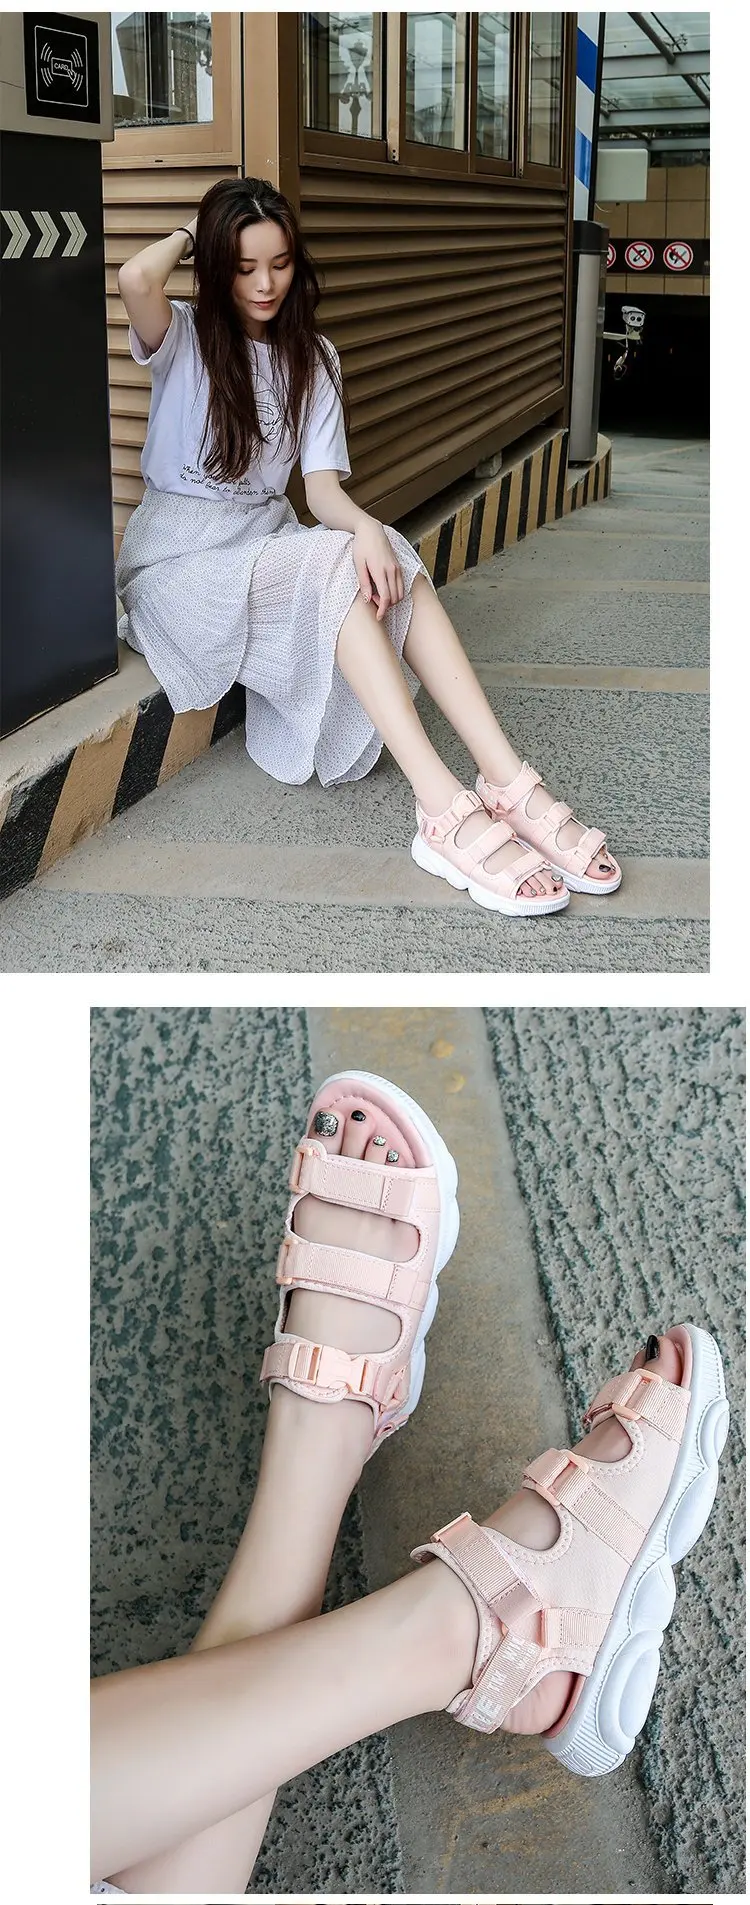 Толстые сандалии на платформе 2019 г. новые летние корейские босоножки женские римские сандалии на плоской подошве с открытым носком и